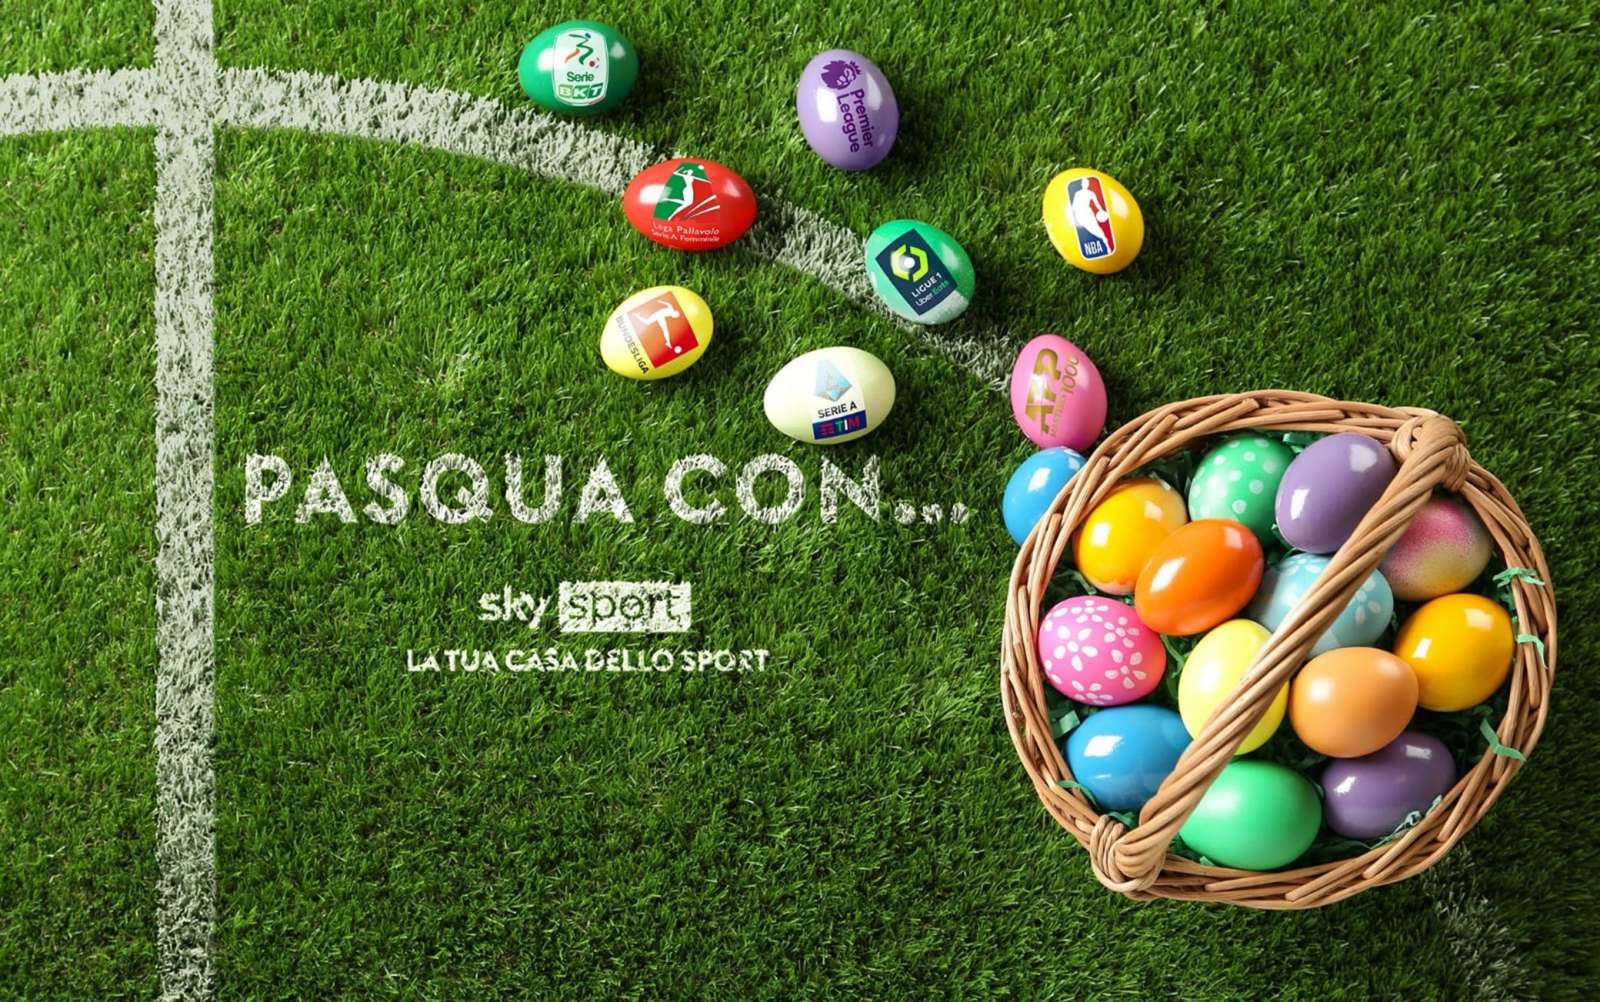 Sabato Santo, Pasqua e Pasquetta… su Sky Sport! Tre giorni dagli eventi imperdibili 